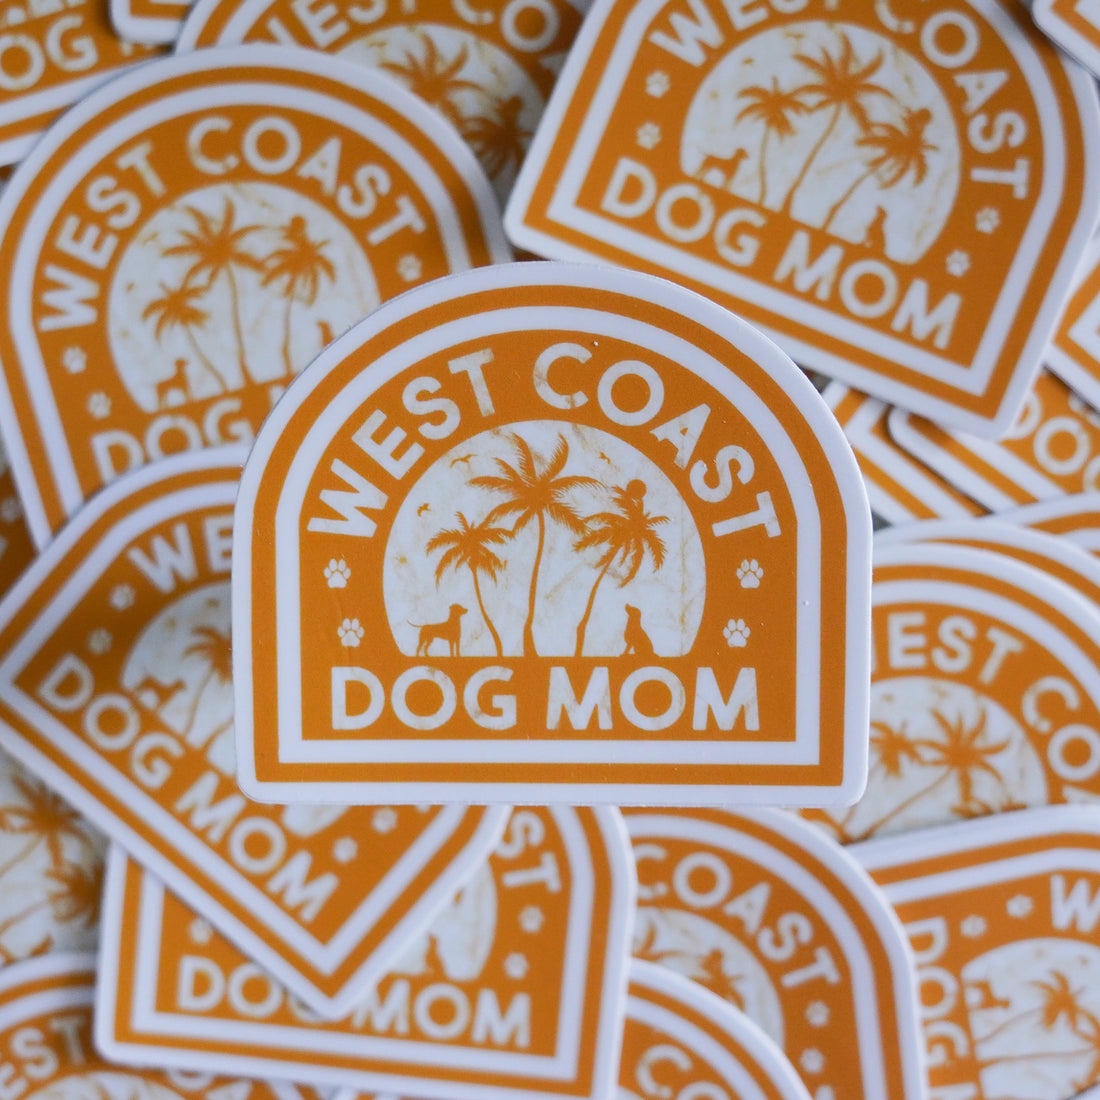 West Coast Dog Mom Sticker